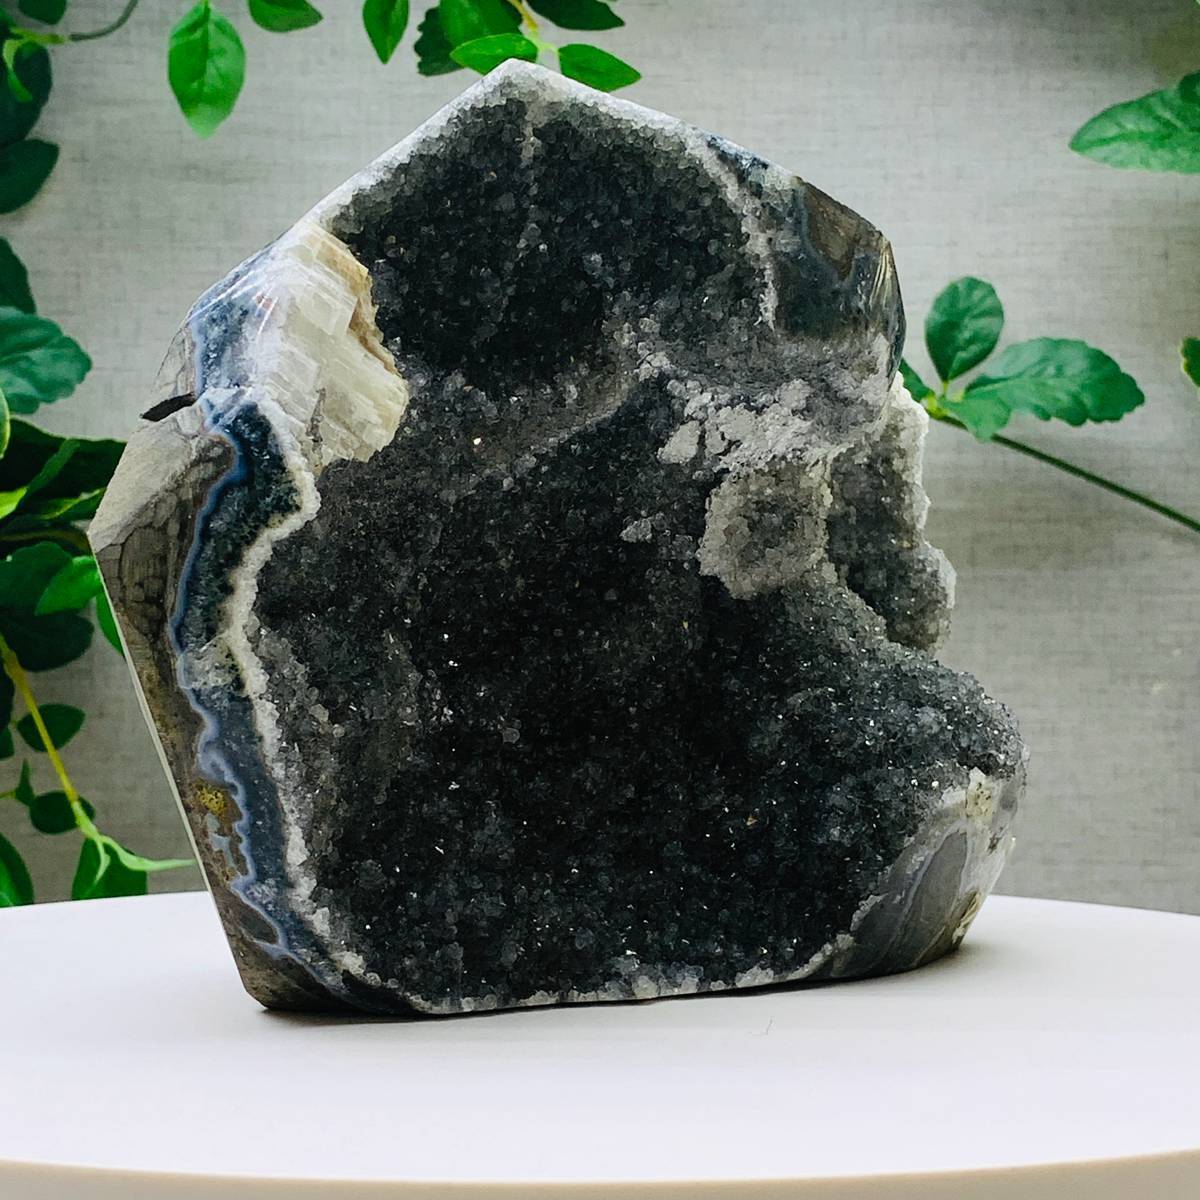 3475g Natural Amethyst Geode Mineral Specimen Crystal Quartz Energy Decoration